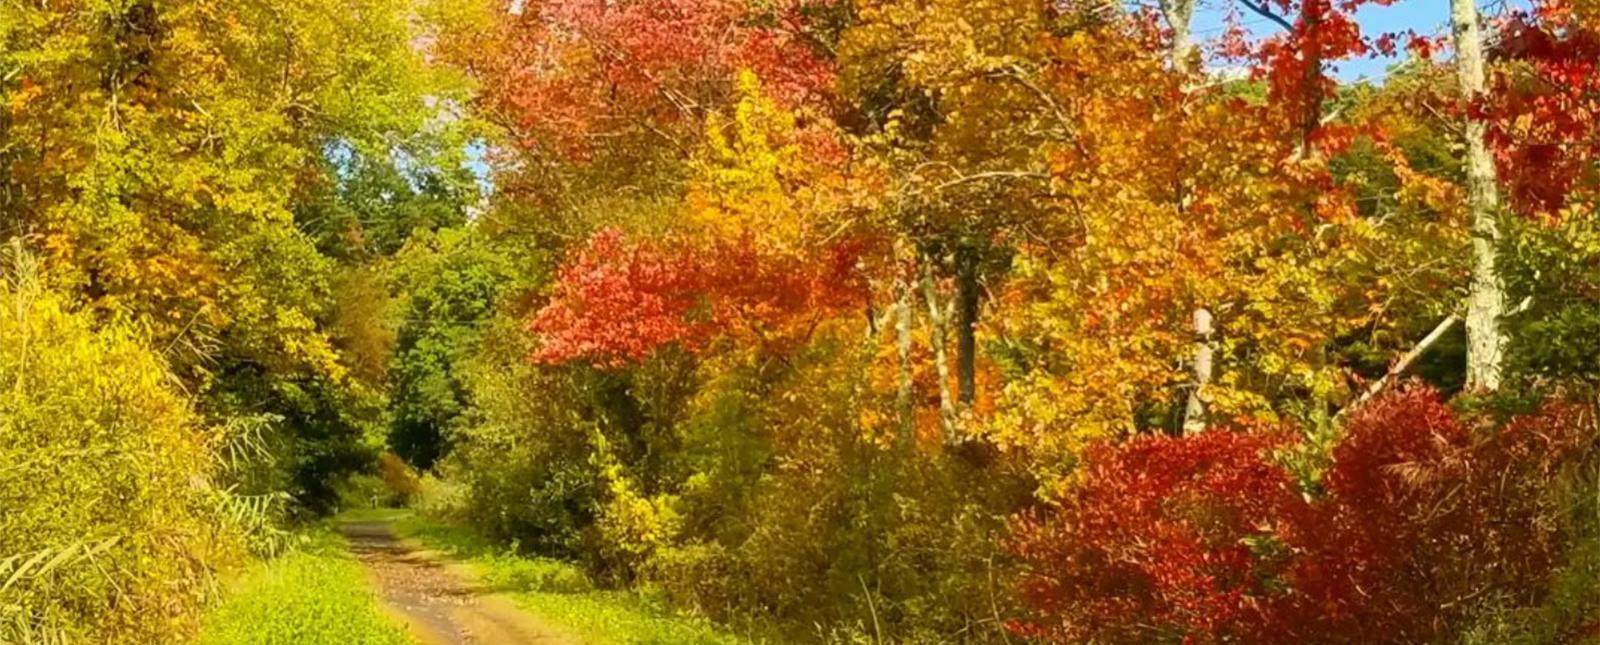 Un camino a través del bosque y el follaje de otoño en un día soleado (Instagram@ecorocks)